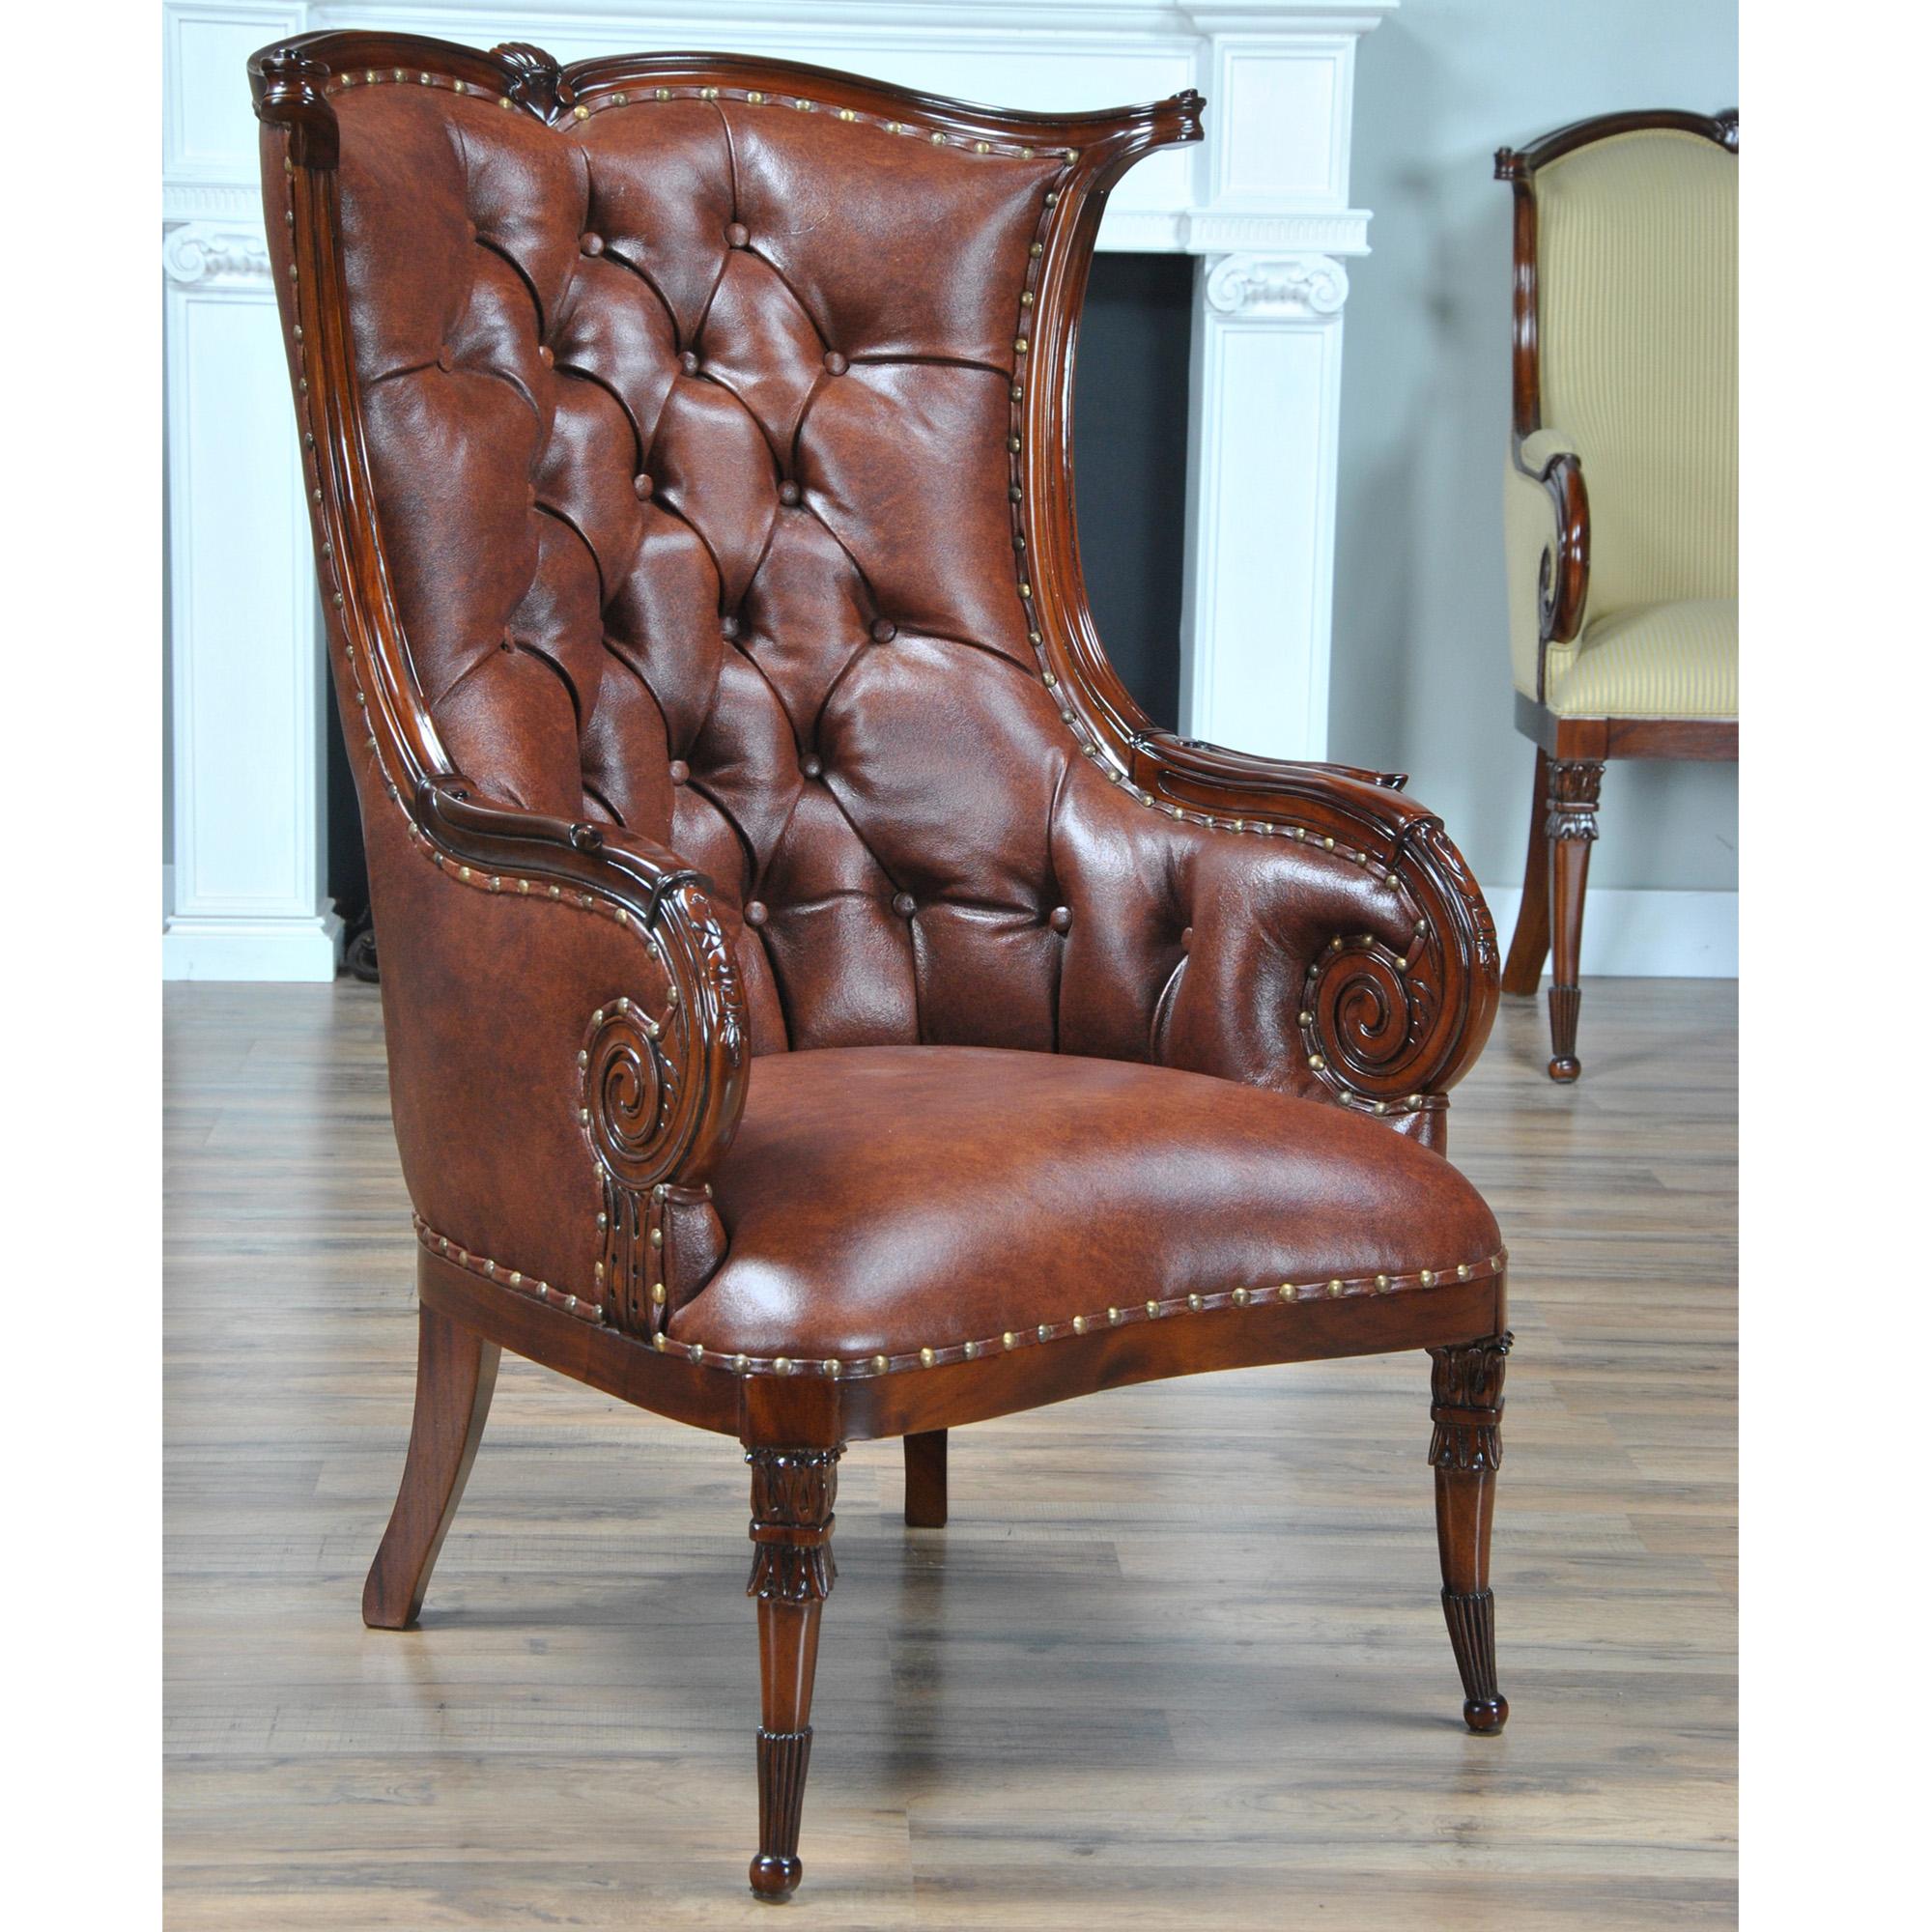 Der Niagara Furniture Leather Fireside Chair ist einem antiken amerikanischen Original nachempfunden und wird in voll genarbtem, getuftetem Echtleder mit Messingnägeln ausgeliefert. Diese Reproduktion eines antiken Stuhls weist alle Merkmale seiner